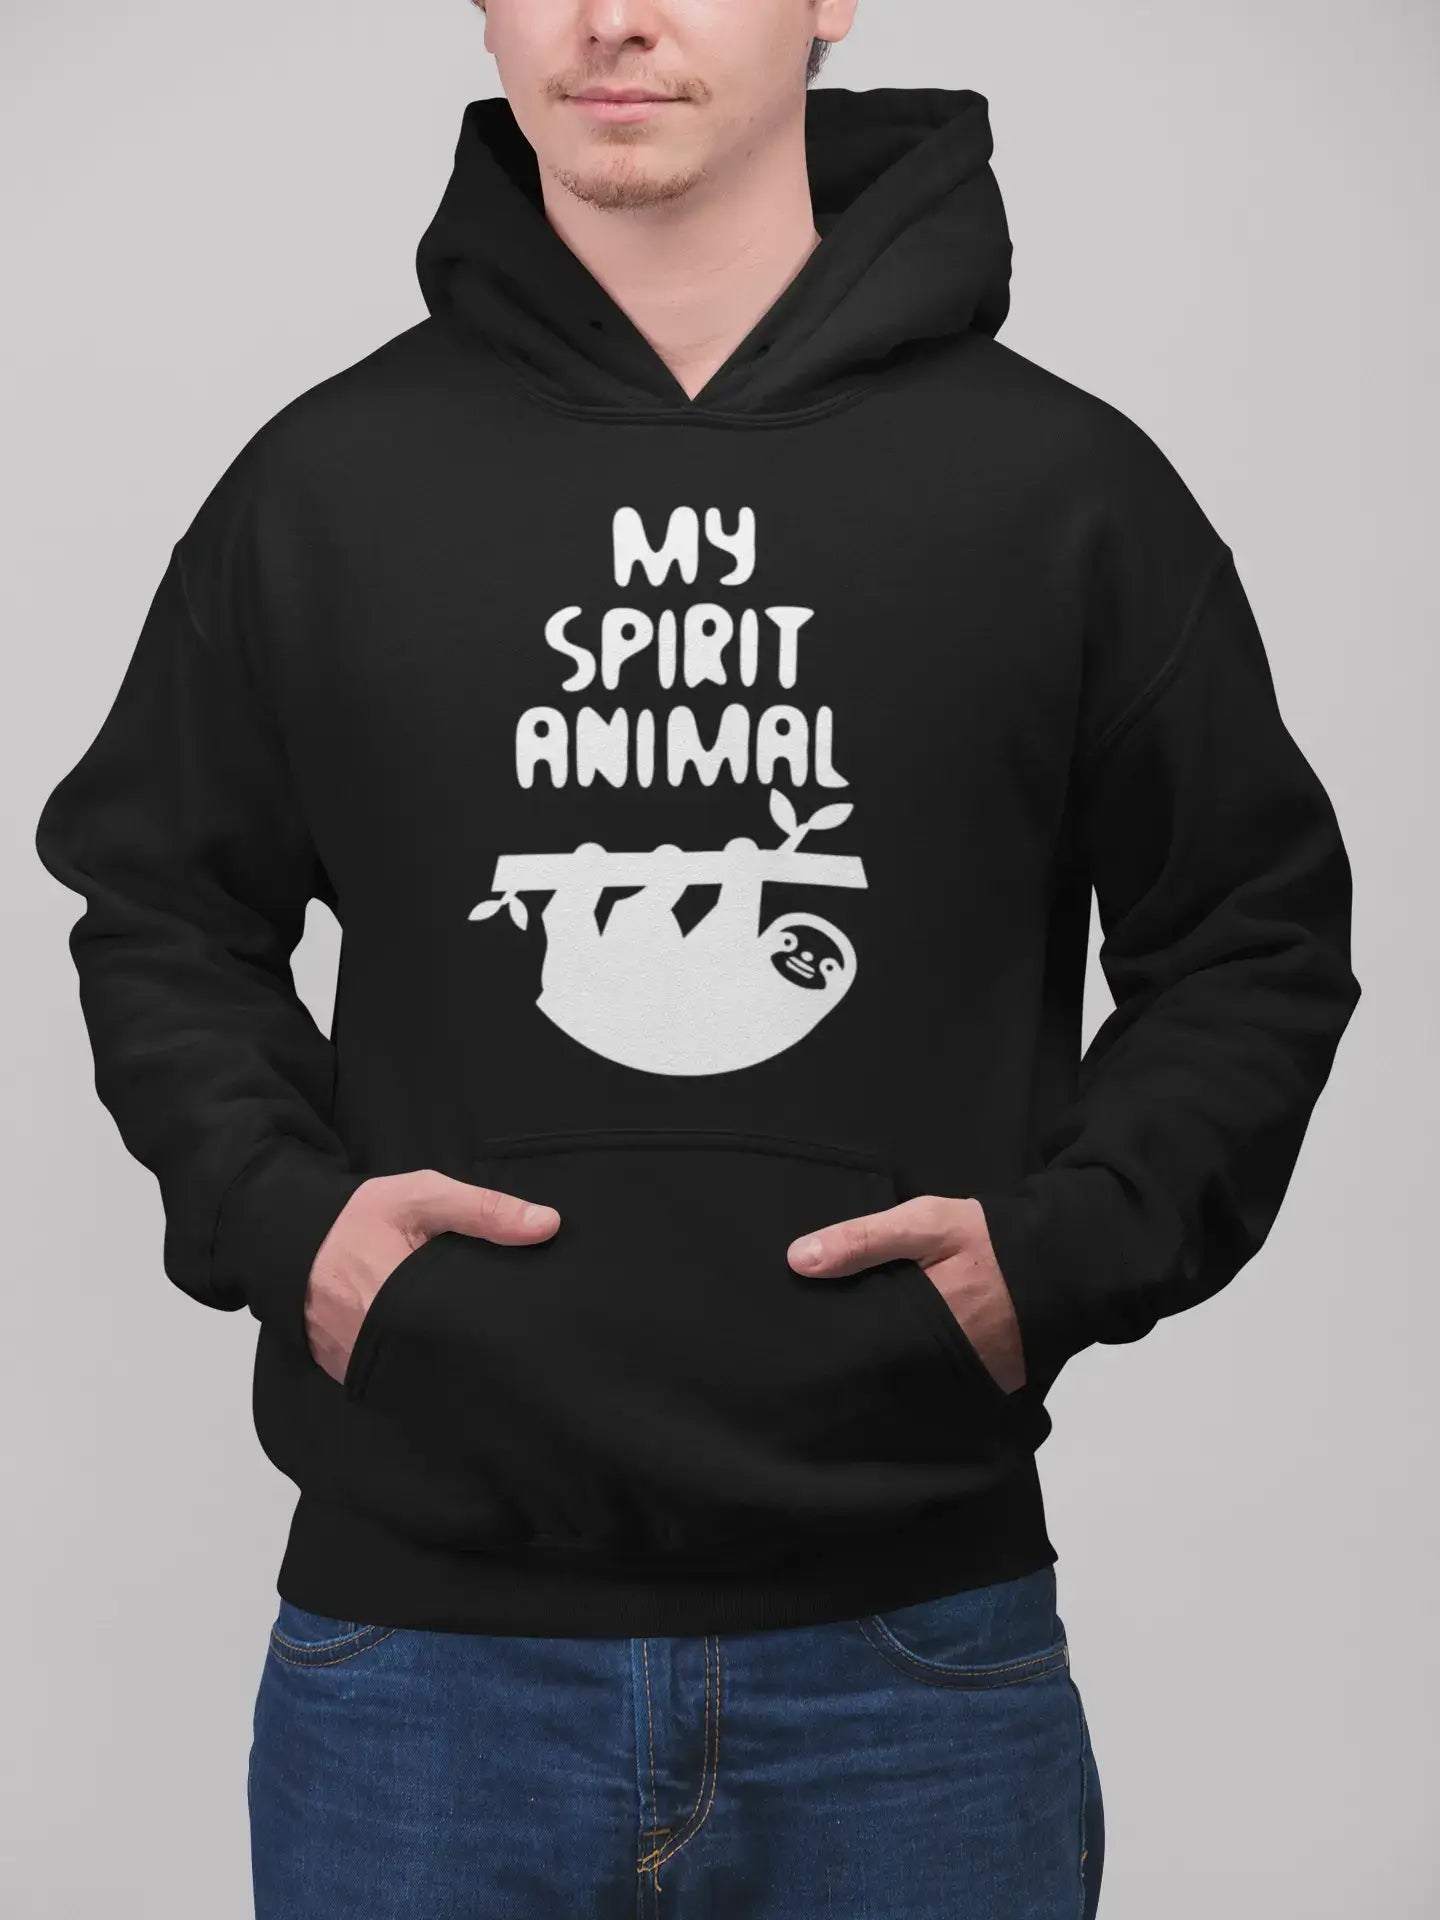 Printed Graphic Unisex Sloth Is My Spirit Animal Hoodie Casual Hooded Sweatshirt